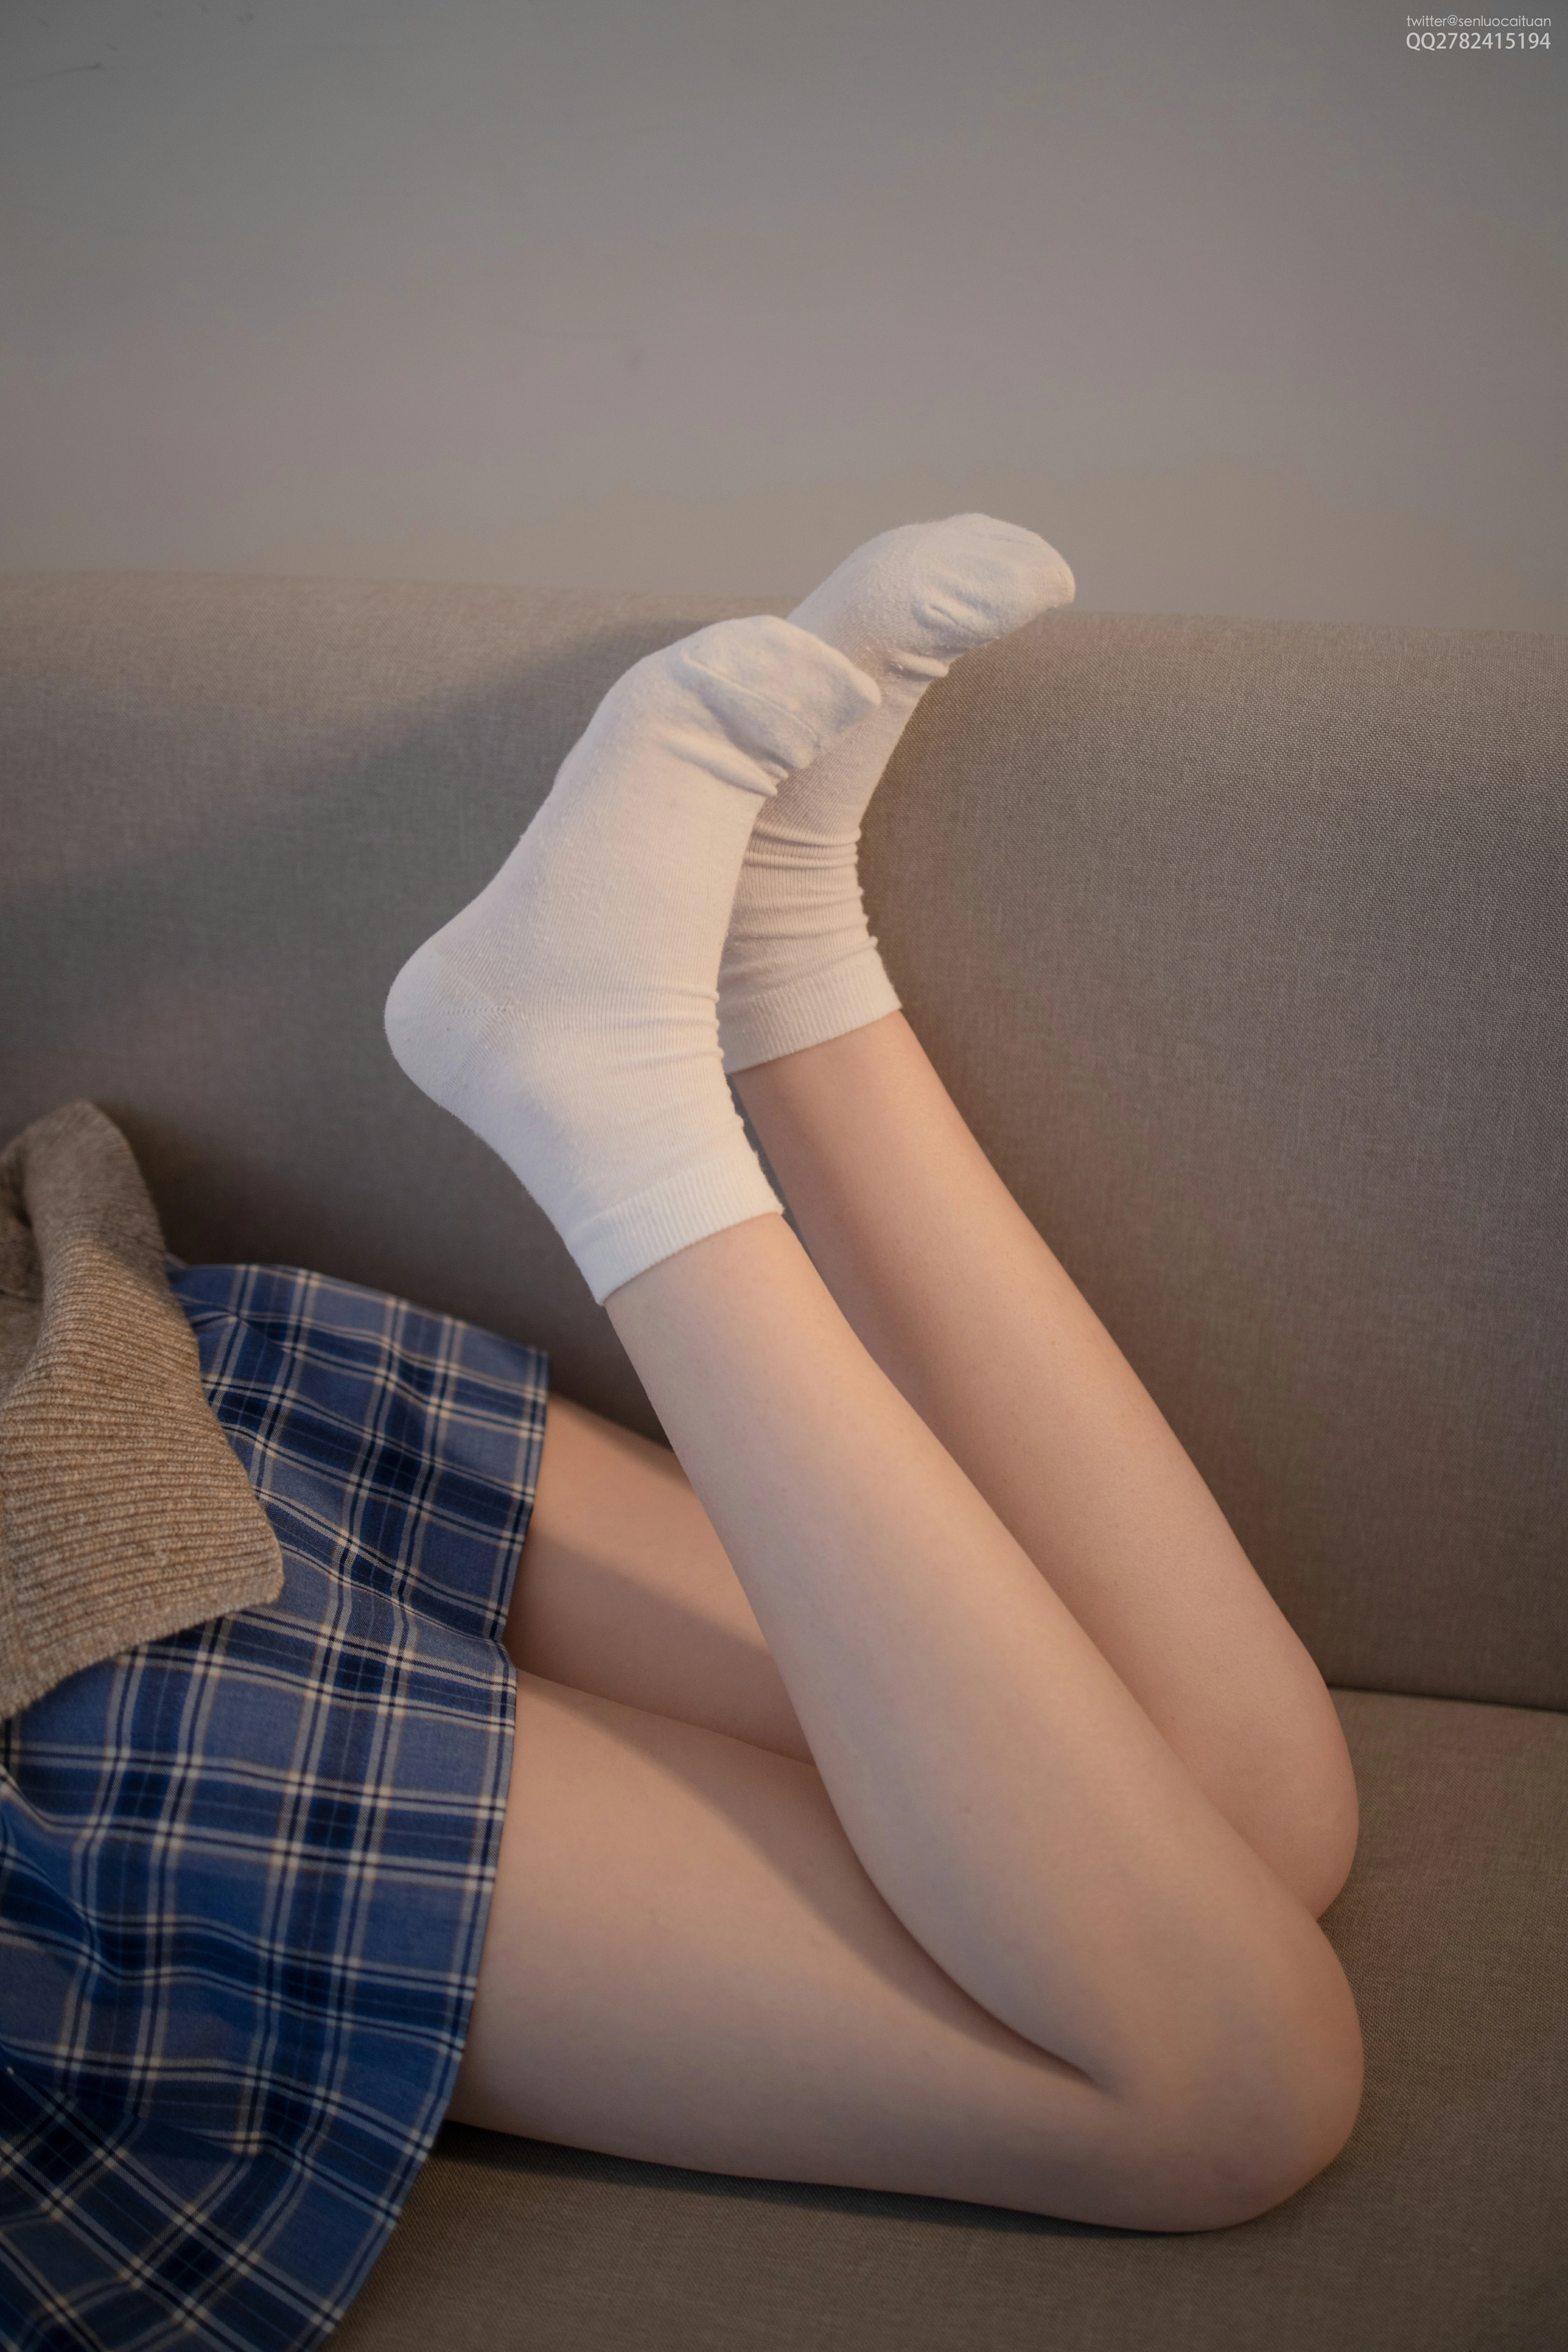 [森萝财团]JKFUN-百元系列1-3 Aika 灰色毛衣加蓝色格子短裙性感私房写真集,